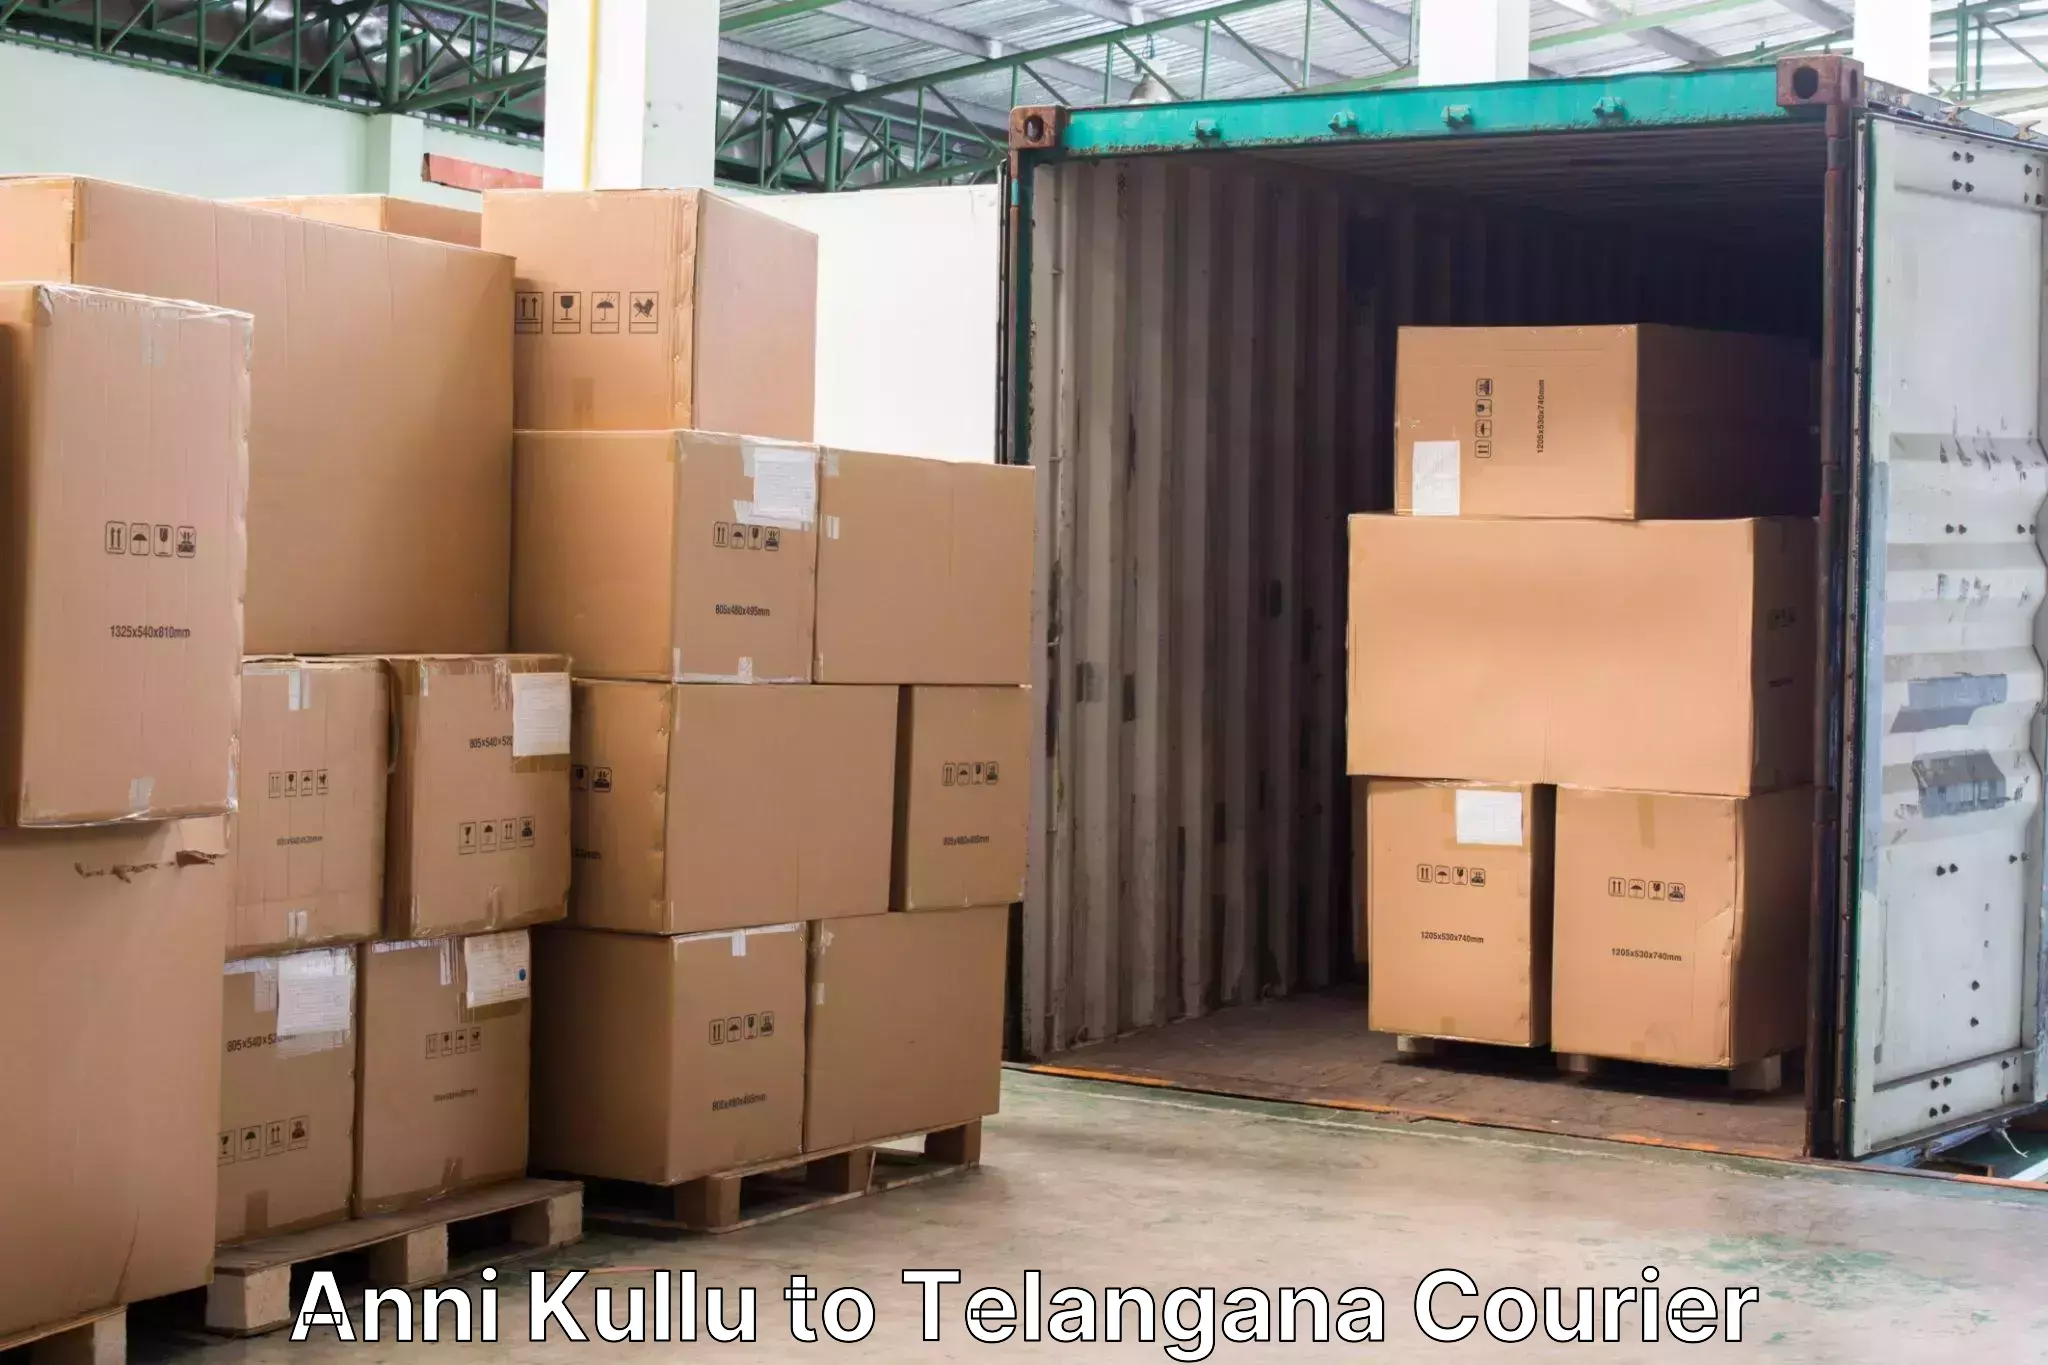 Door-to-door baggage service Anni Kullu to Jainoor